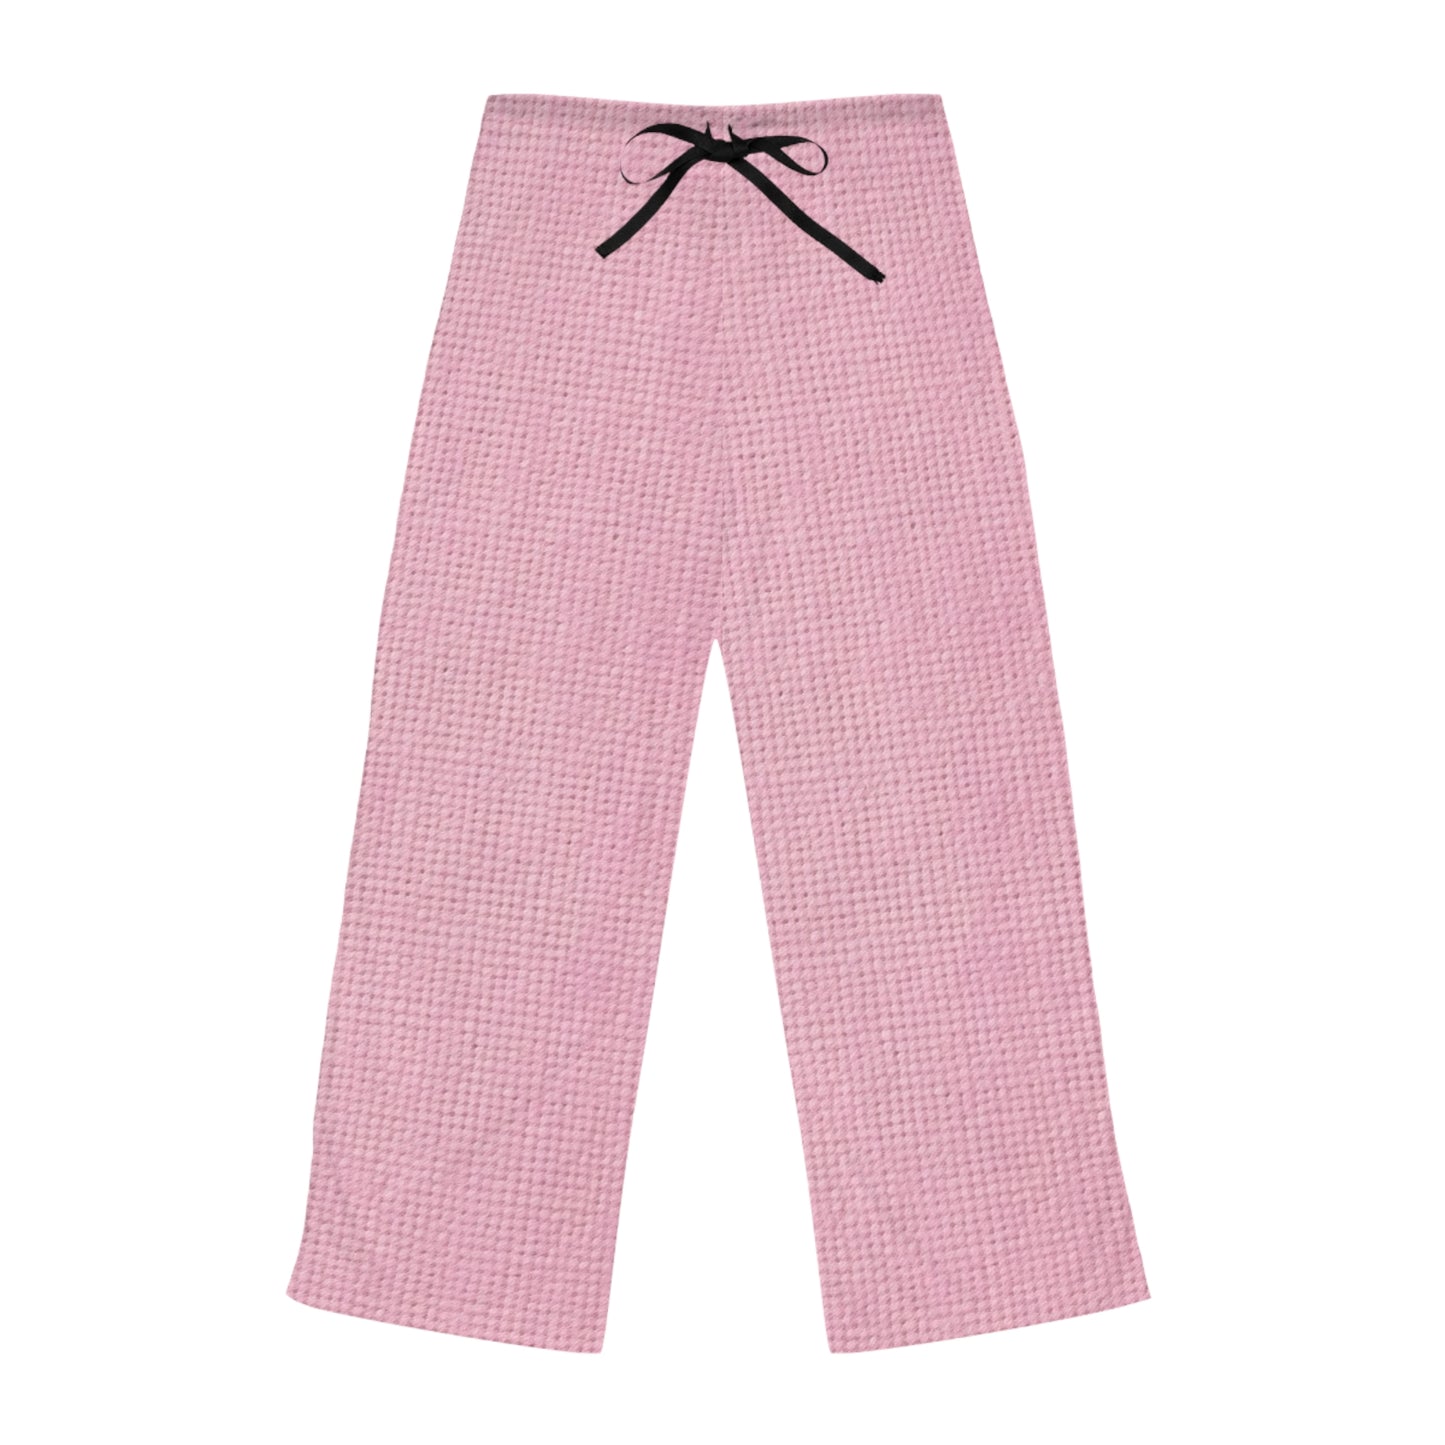 Blushing Garment Dye Pink: Denim-Inspired, Soft-Toned Fabric - Women's Pajama Pants (AOP)